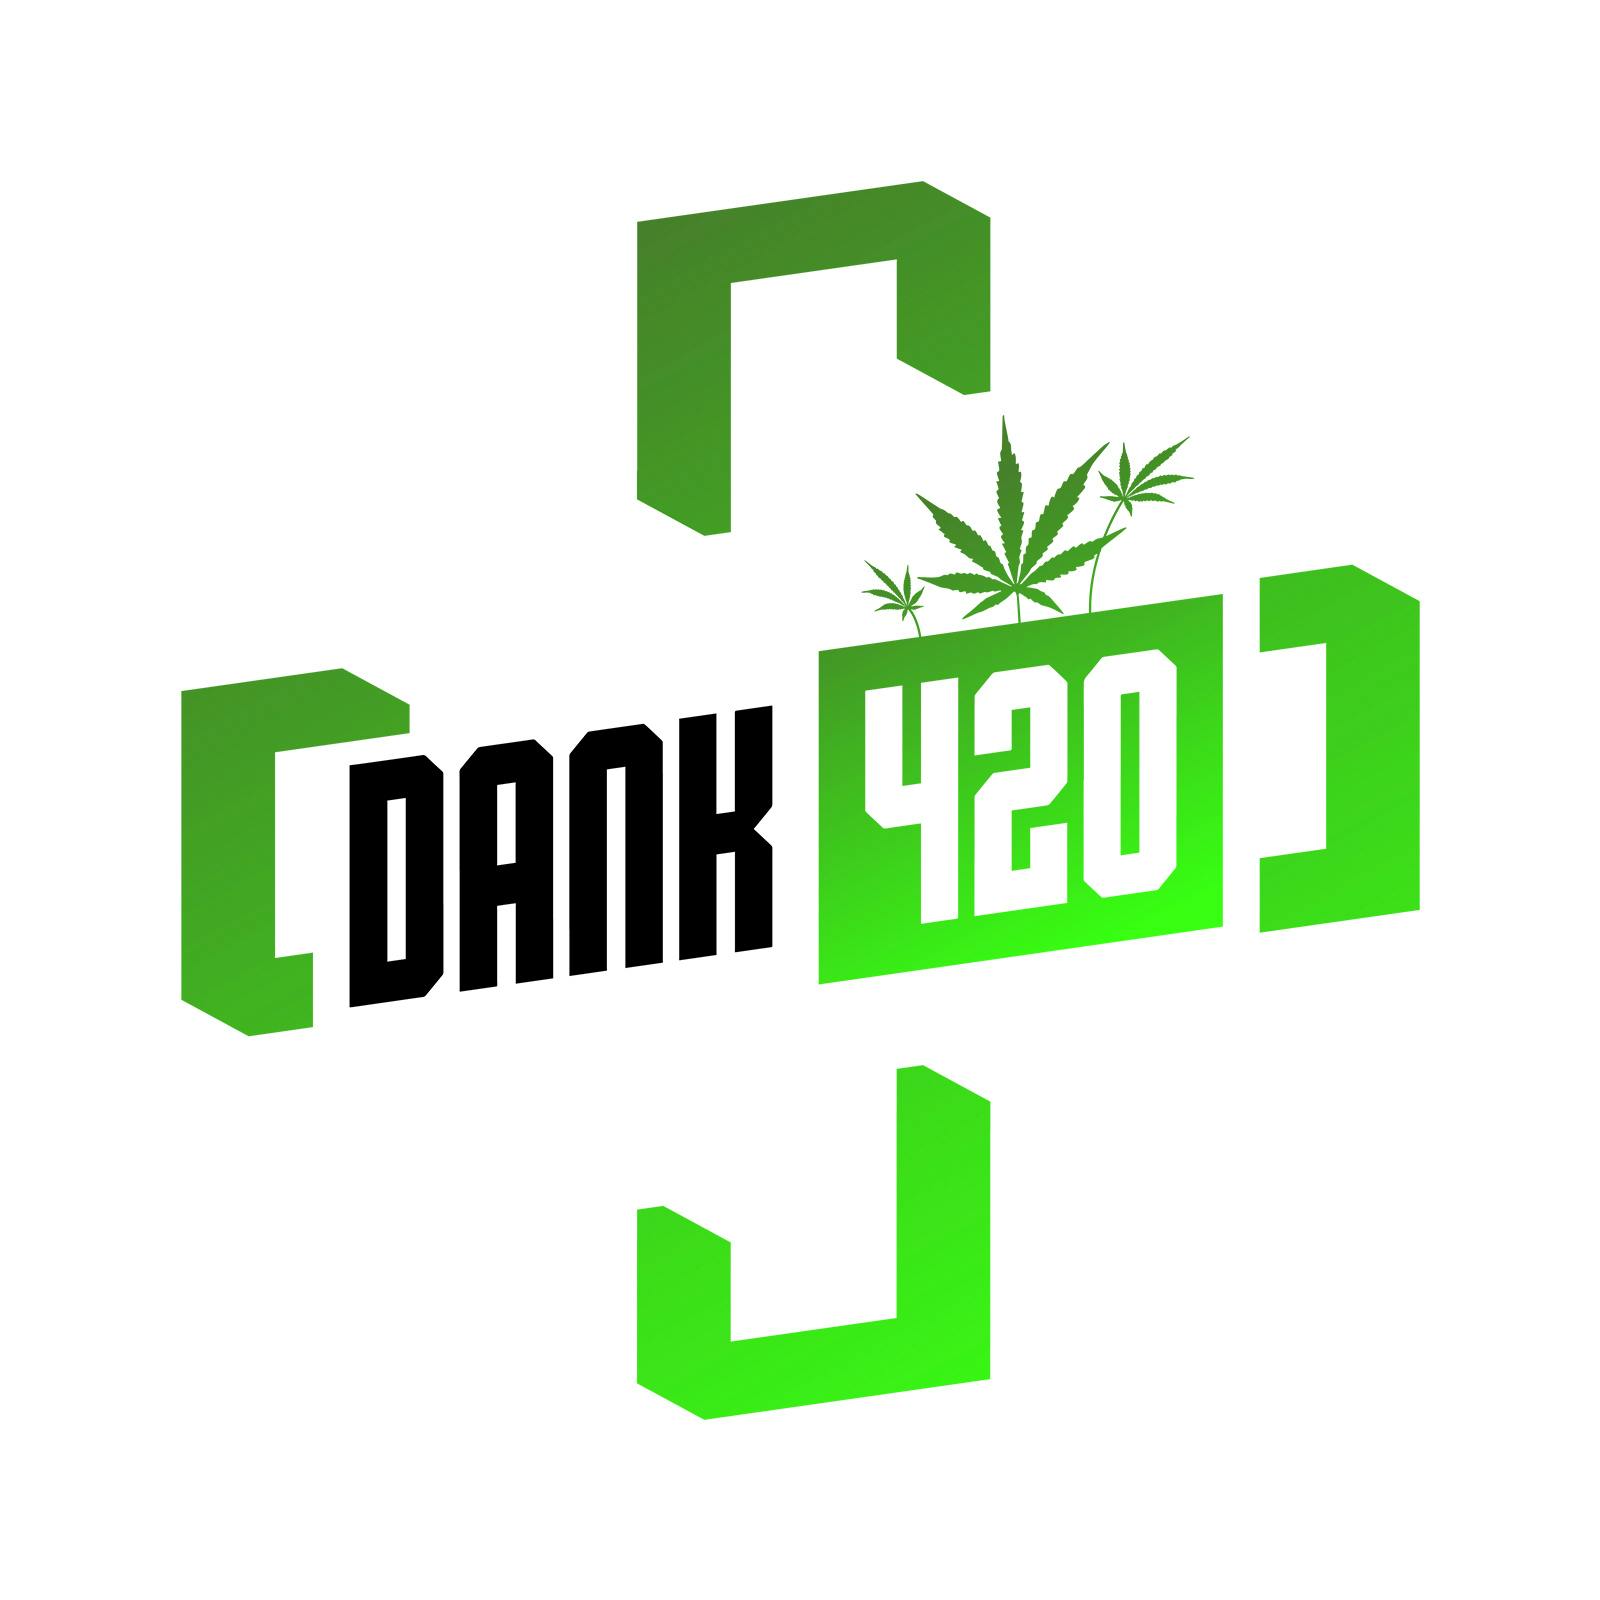 Dank420 logo